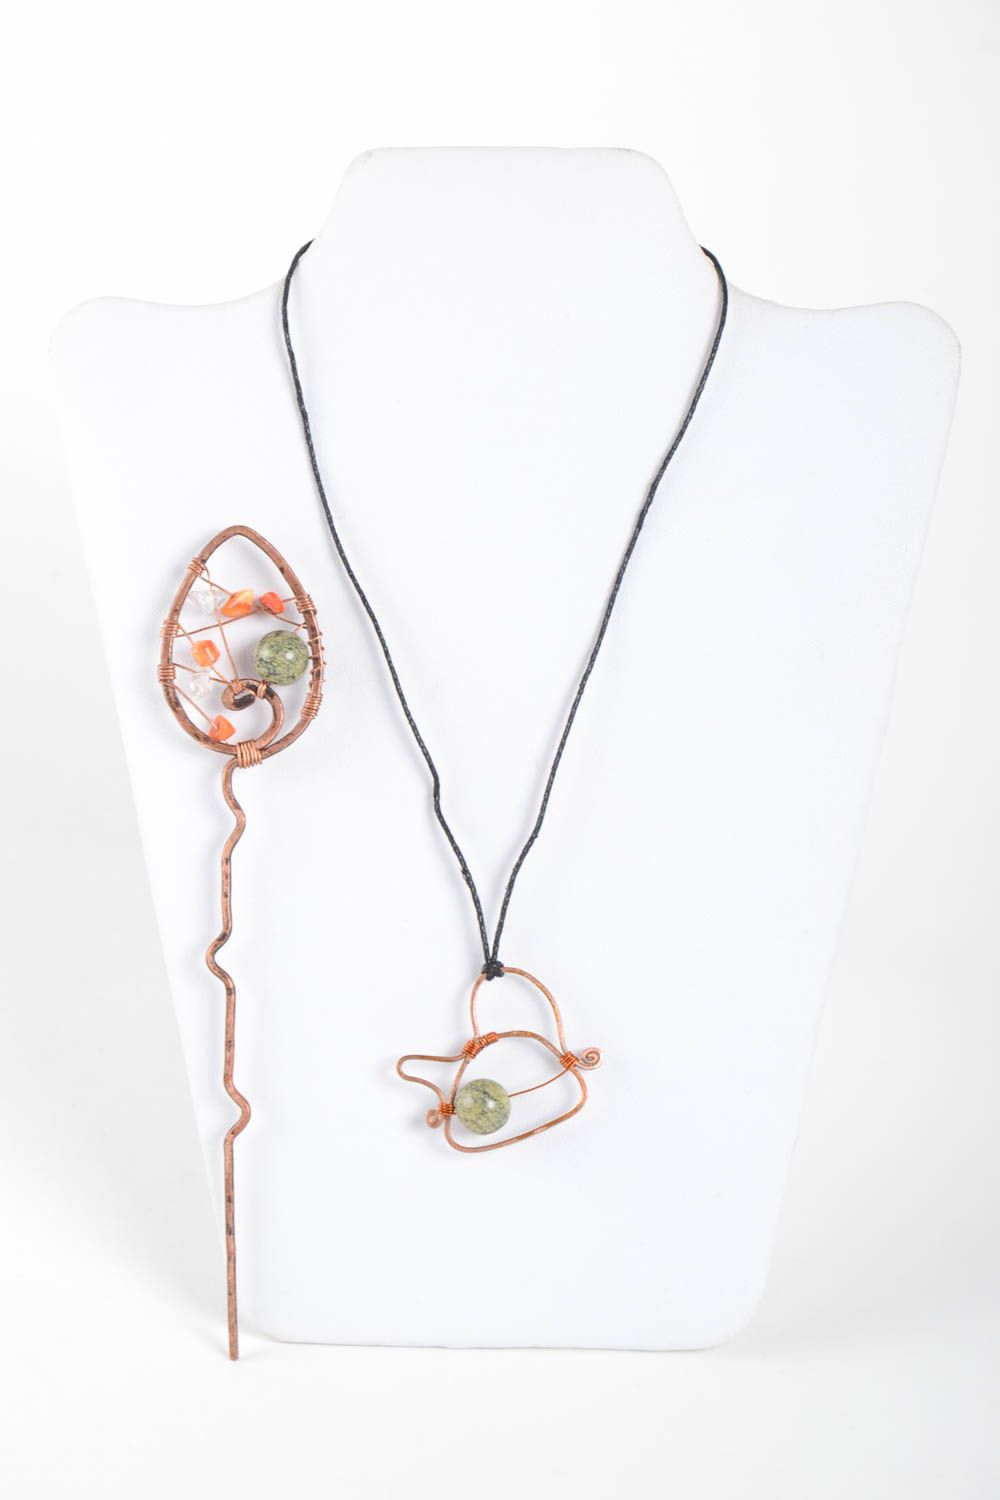 Handmade copper jewelry copper wire pendant copper hairpin copper jewelry photo 2